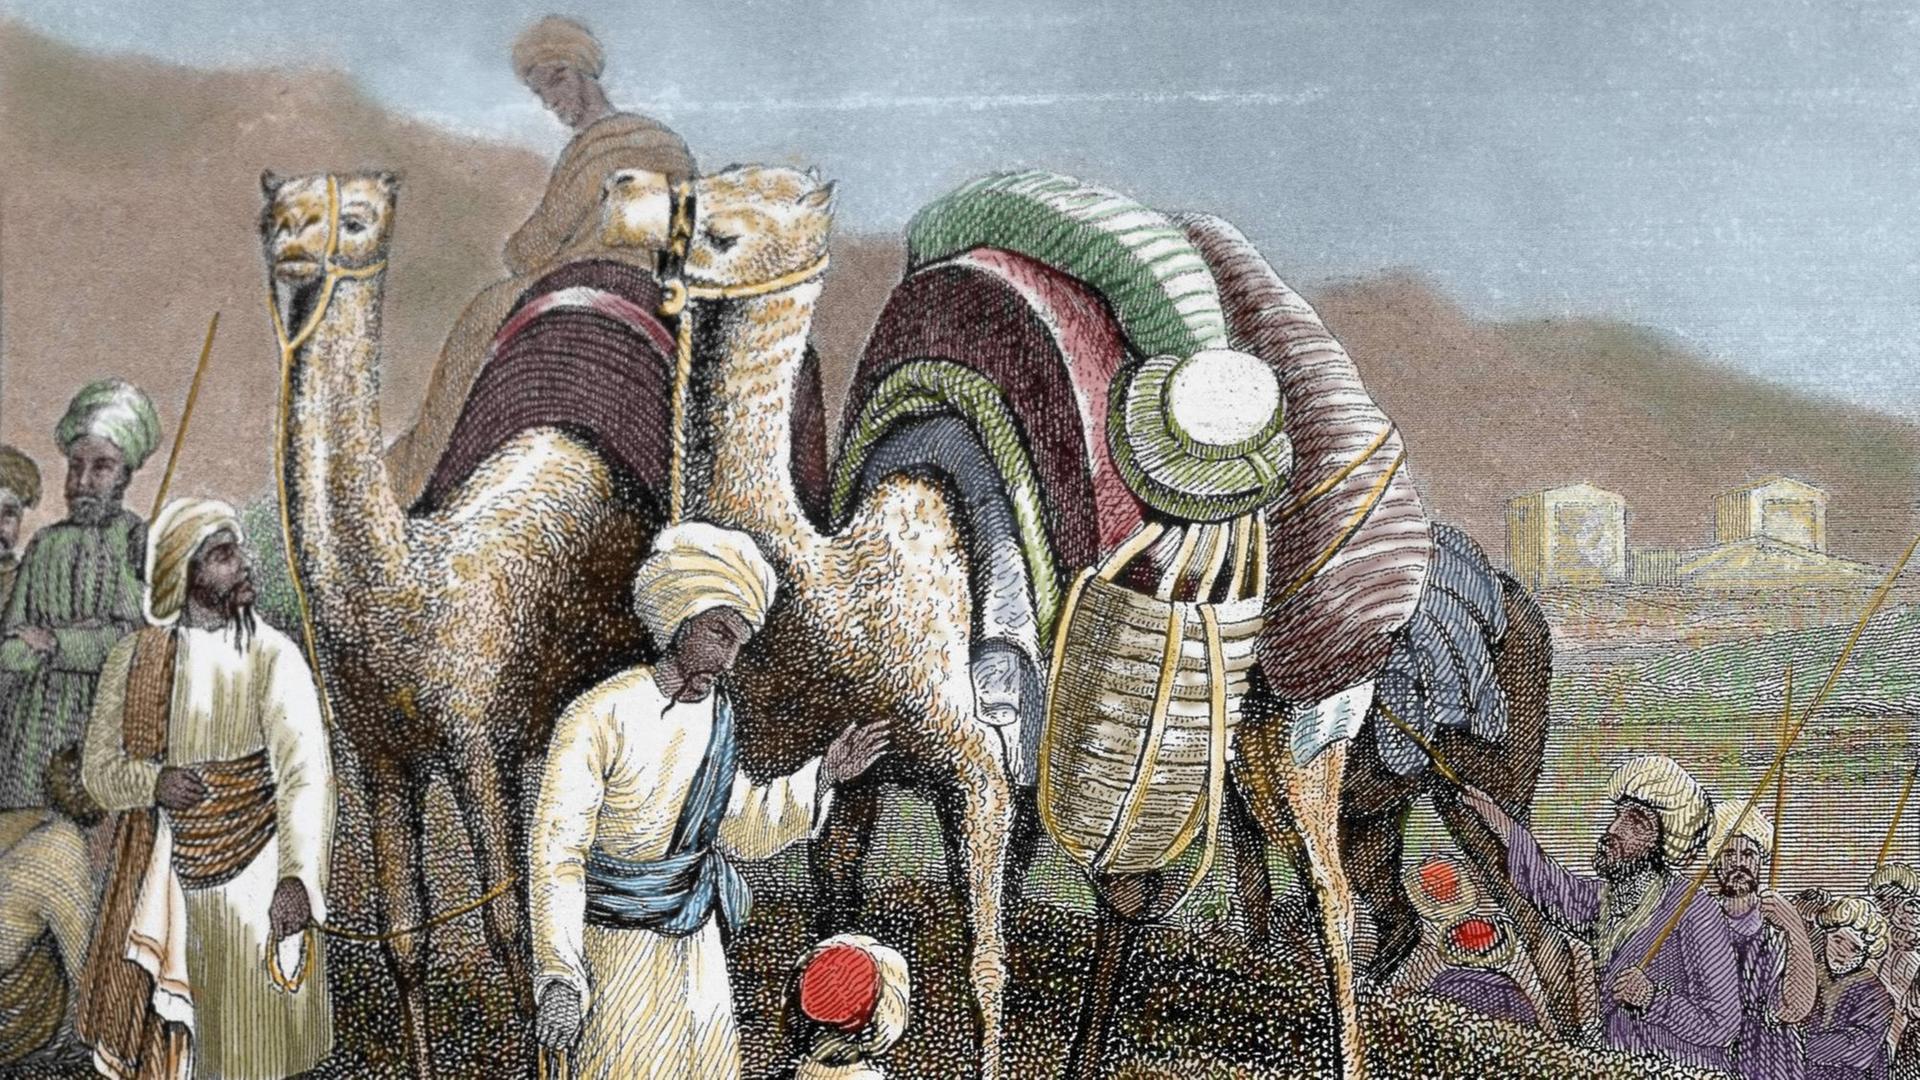 Eine Kamelkarawane rastet in Antiochien im antiken Syrien an der Seidenstraßenroute. Kolorierter Stich aus dem 19. Jahrhundert